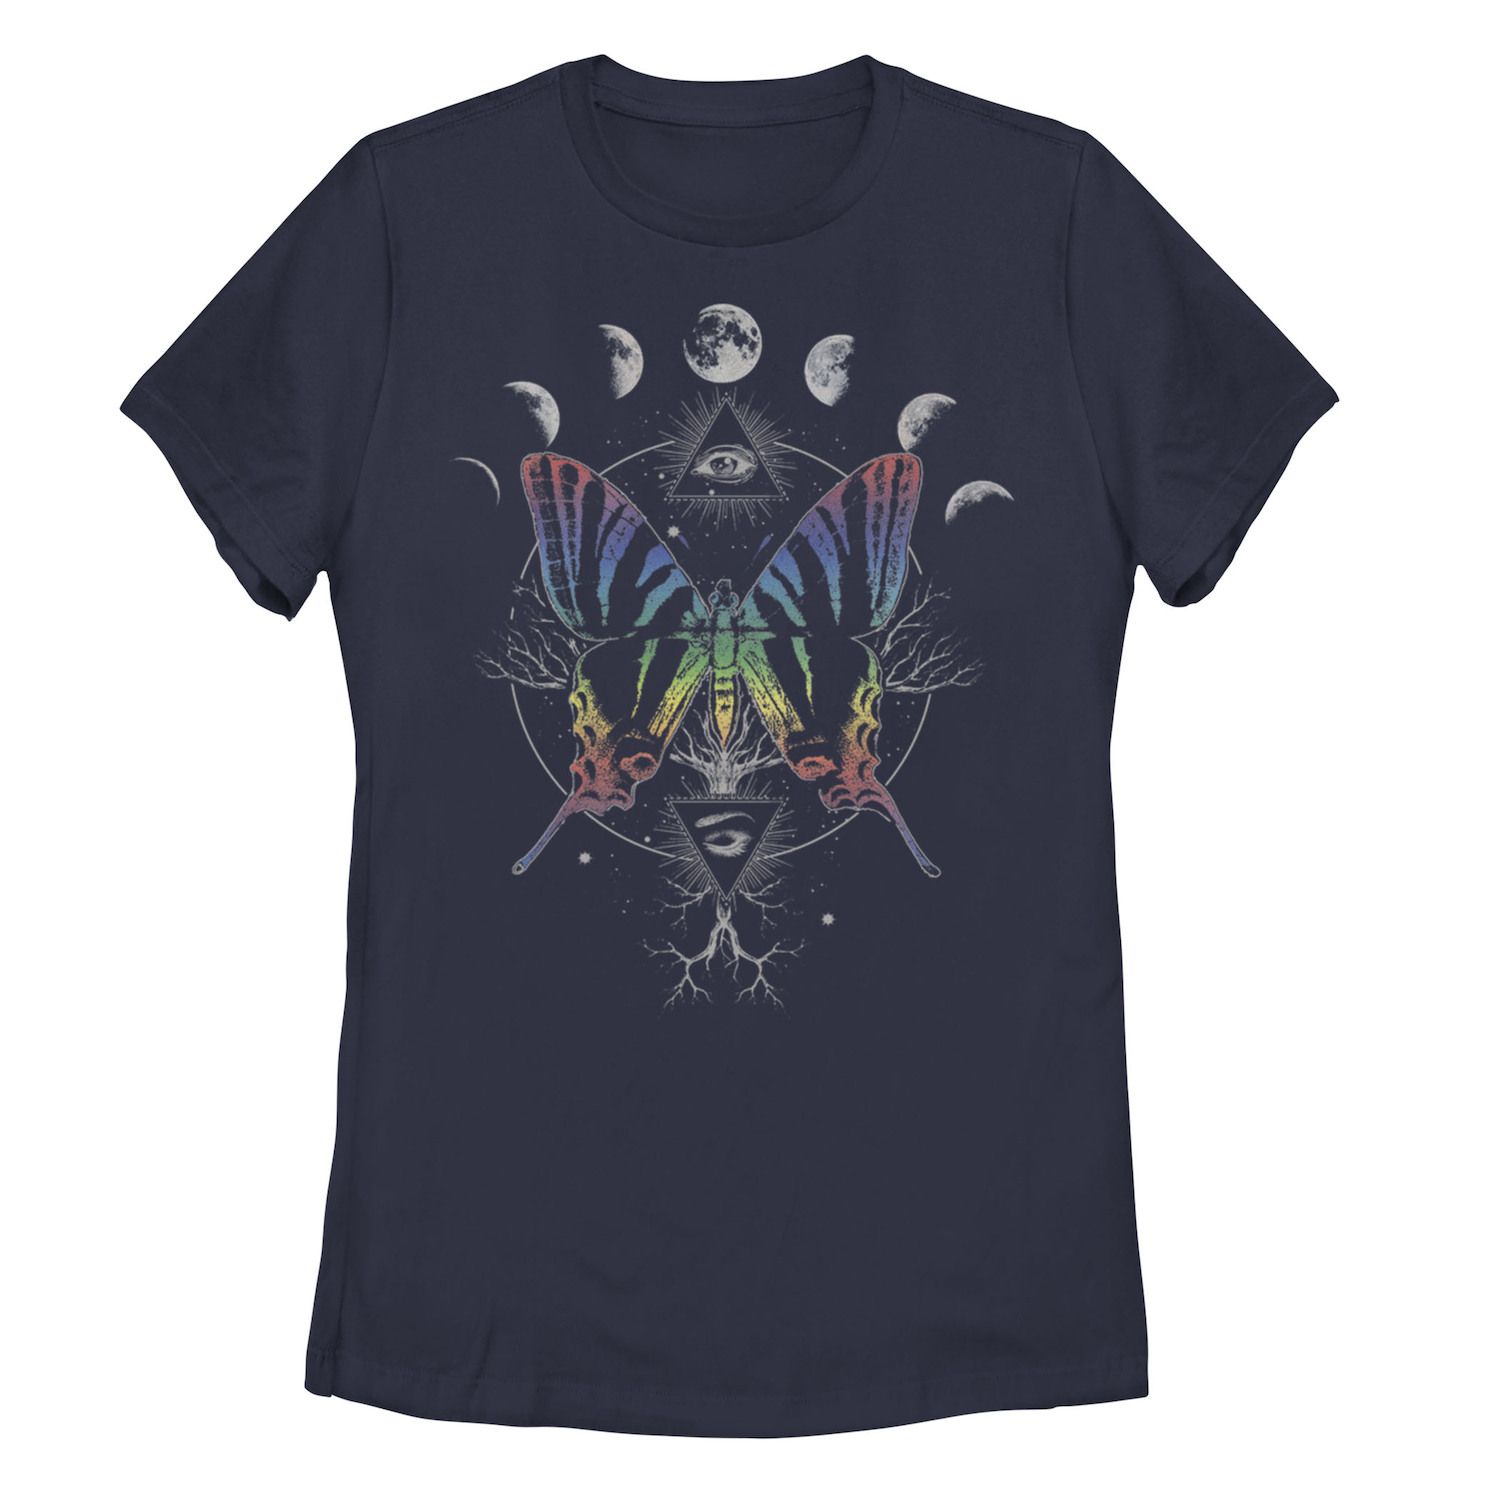 Детская футболка с радужной бабочкой и фазами луны, темно-синий